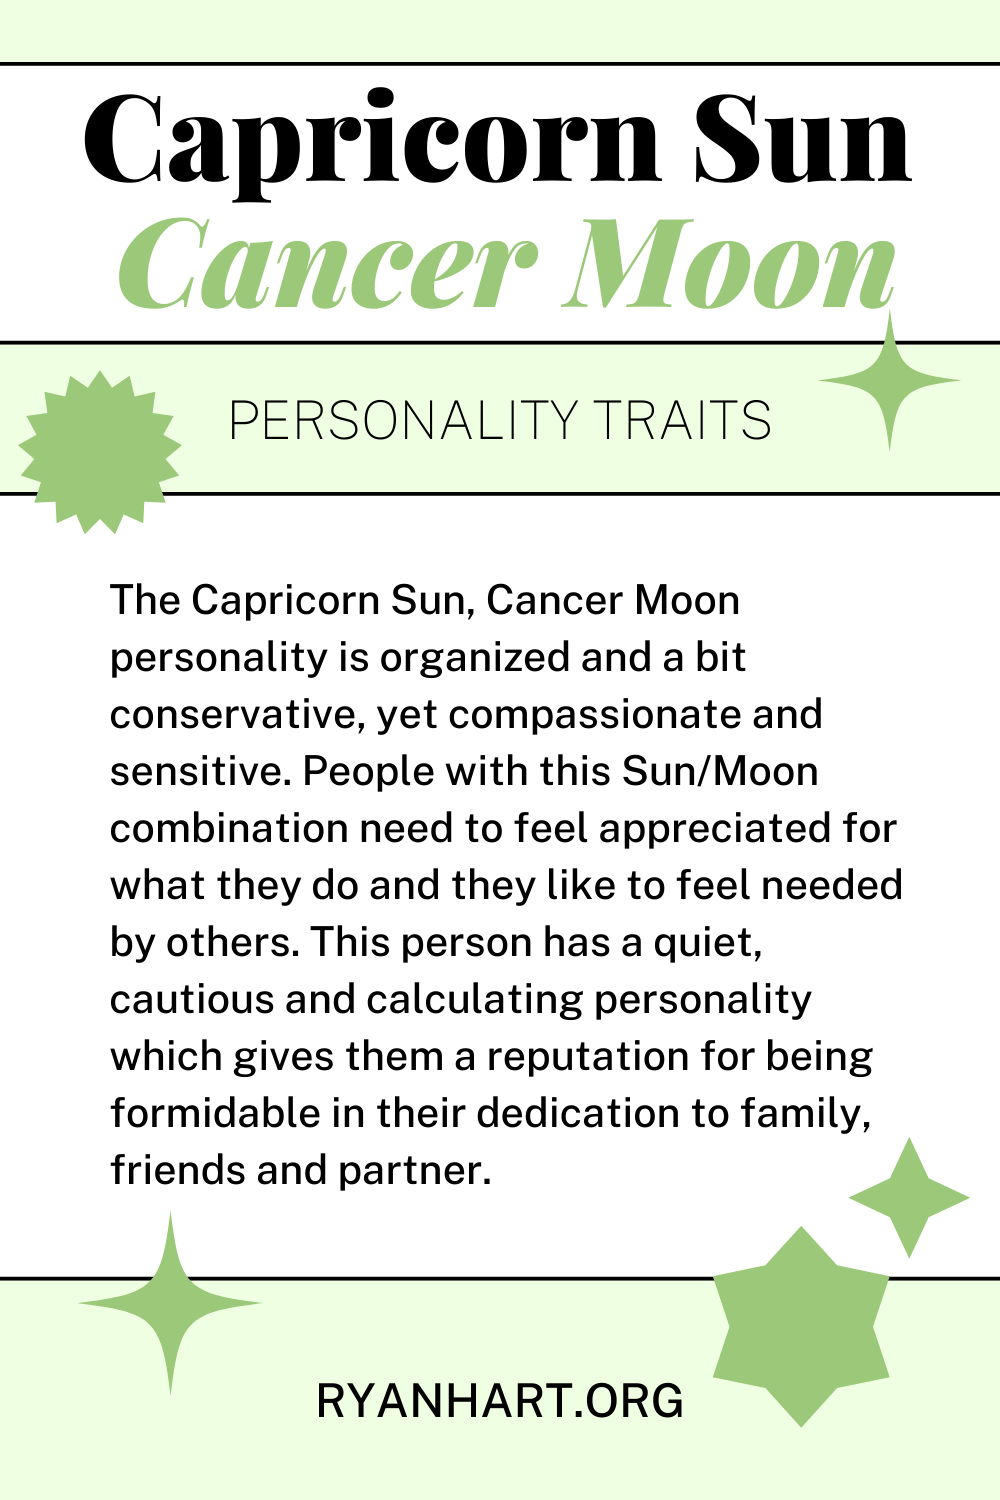  Capricorne Soleil Cancer Lune Traits de personnalité